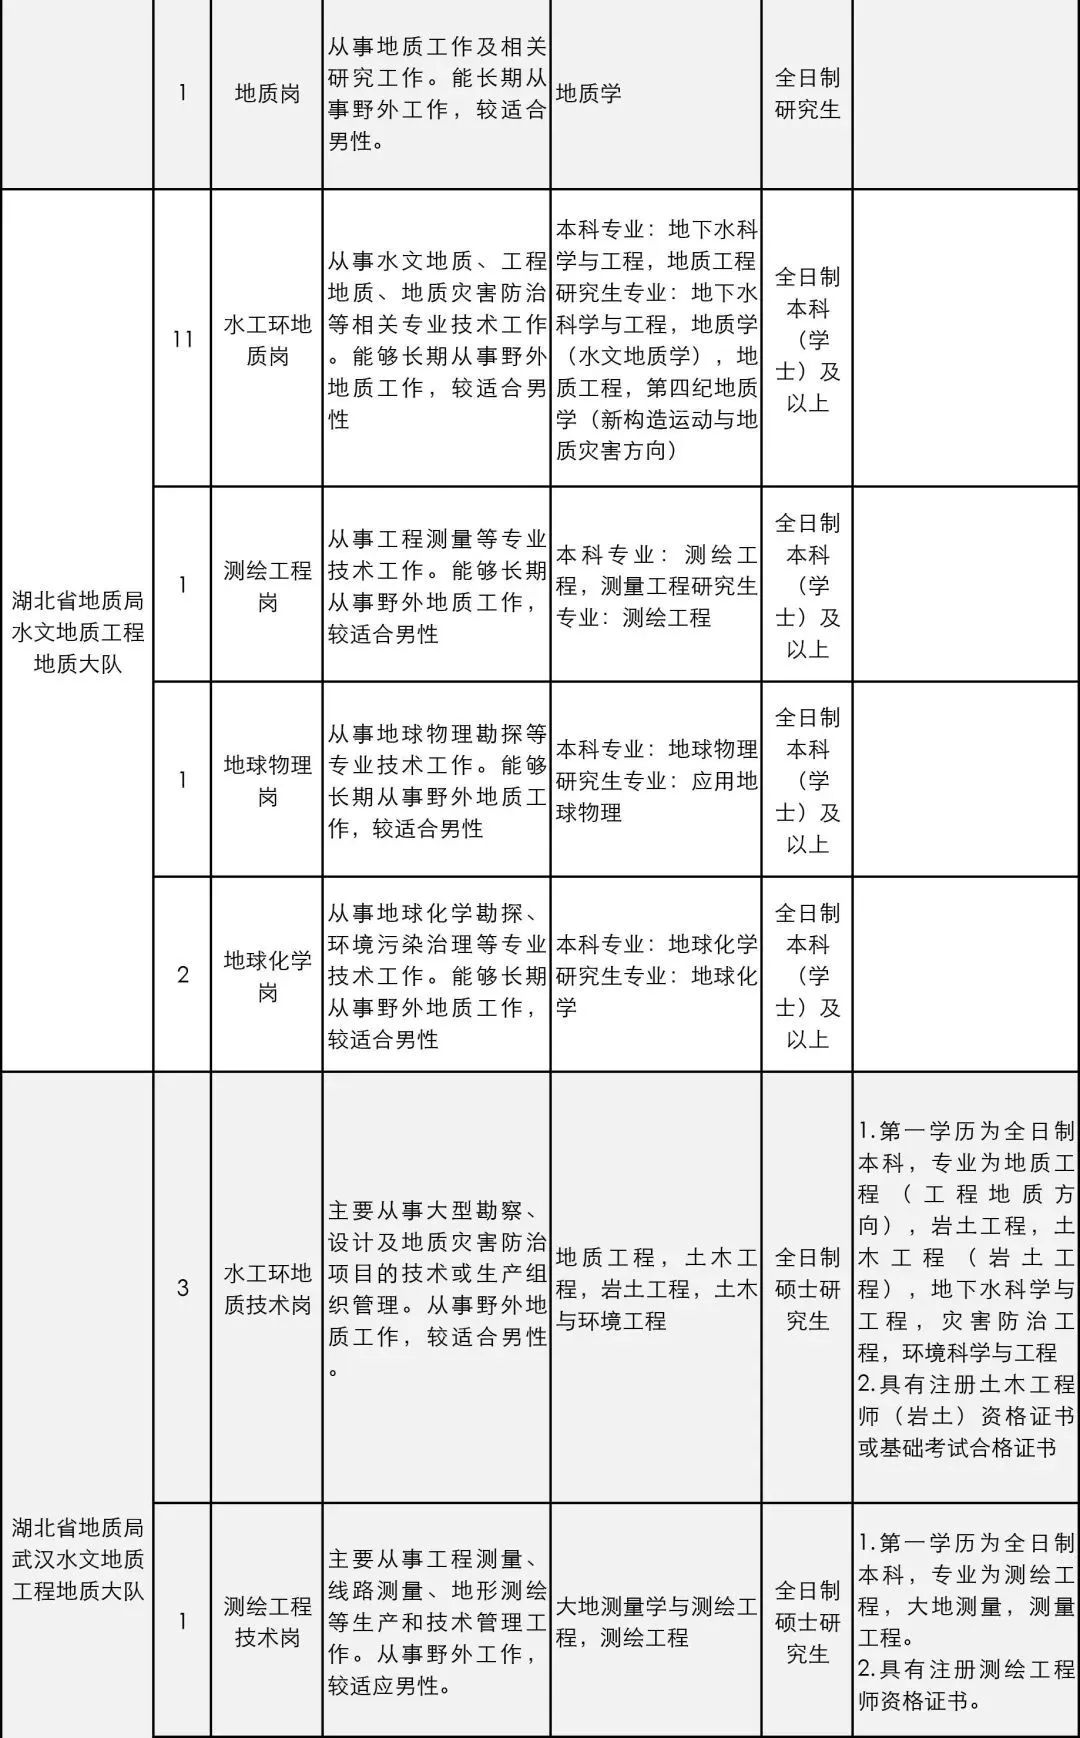 招聘地理信息_2013中国地理信息产业大型招聘会 春季招聘会(3)